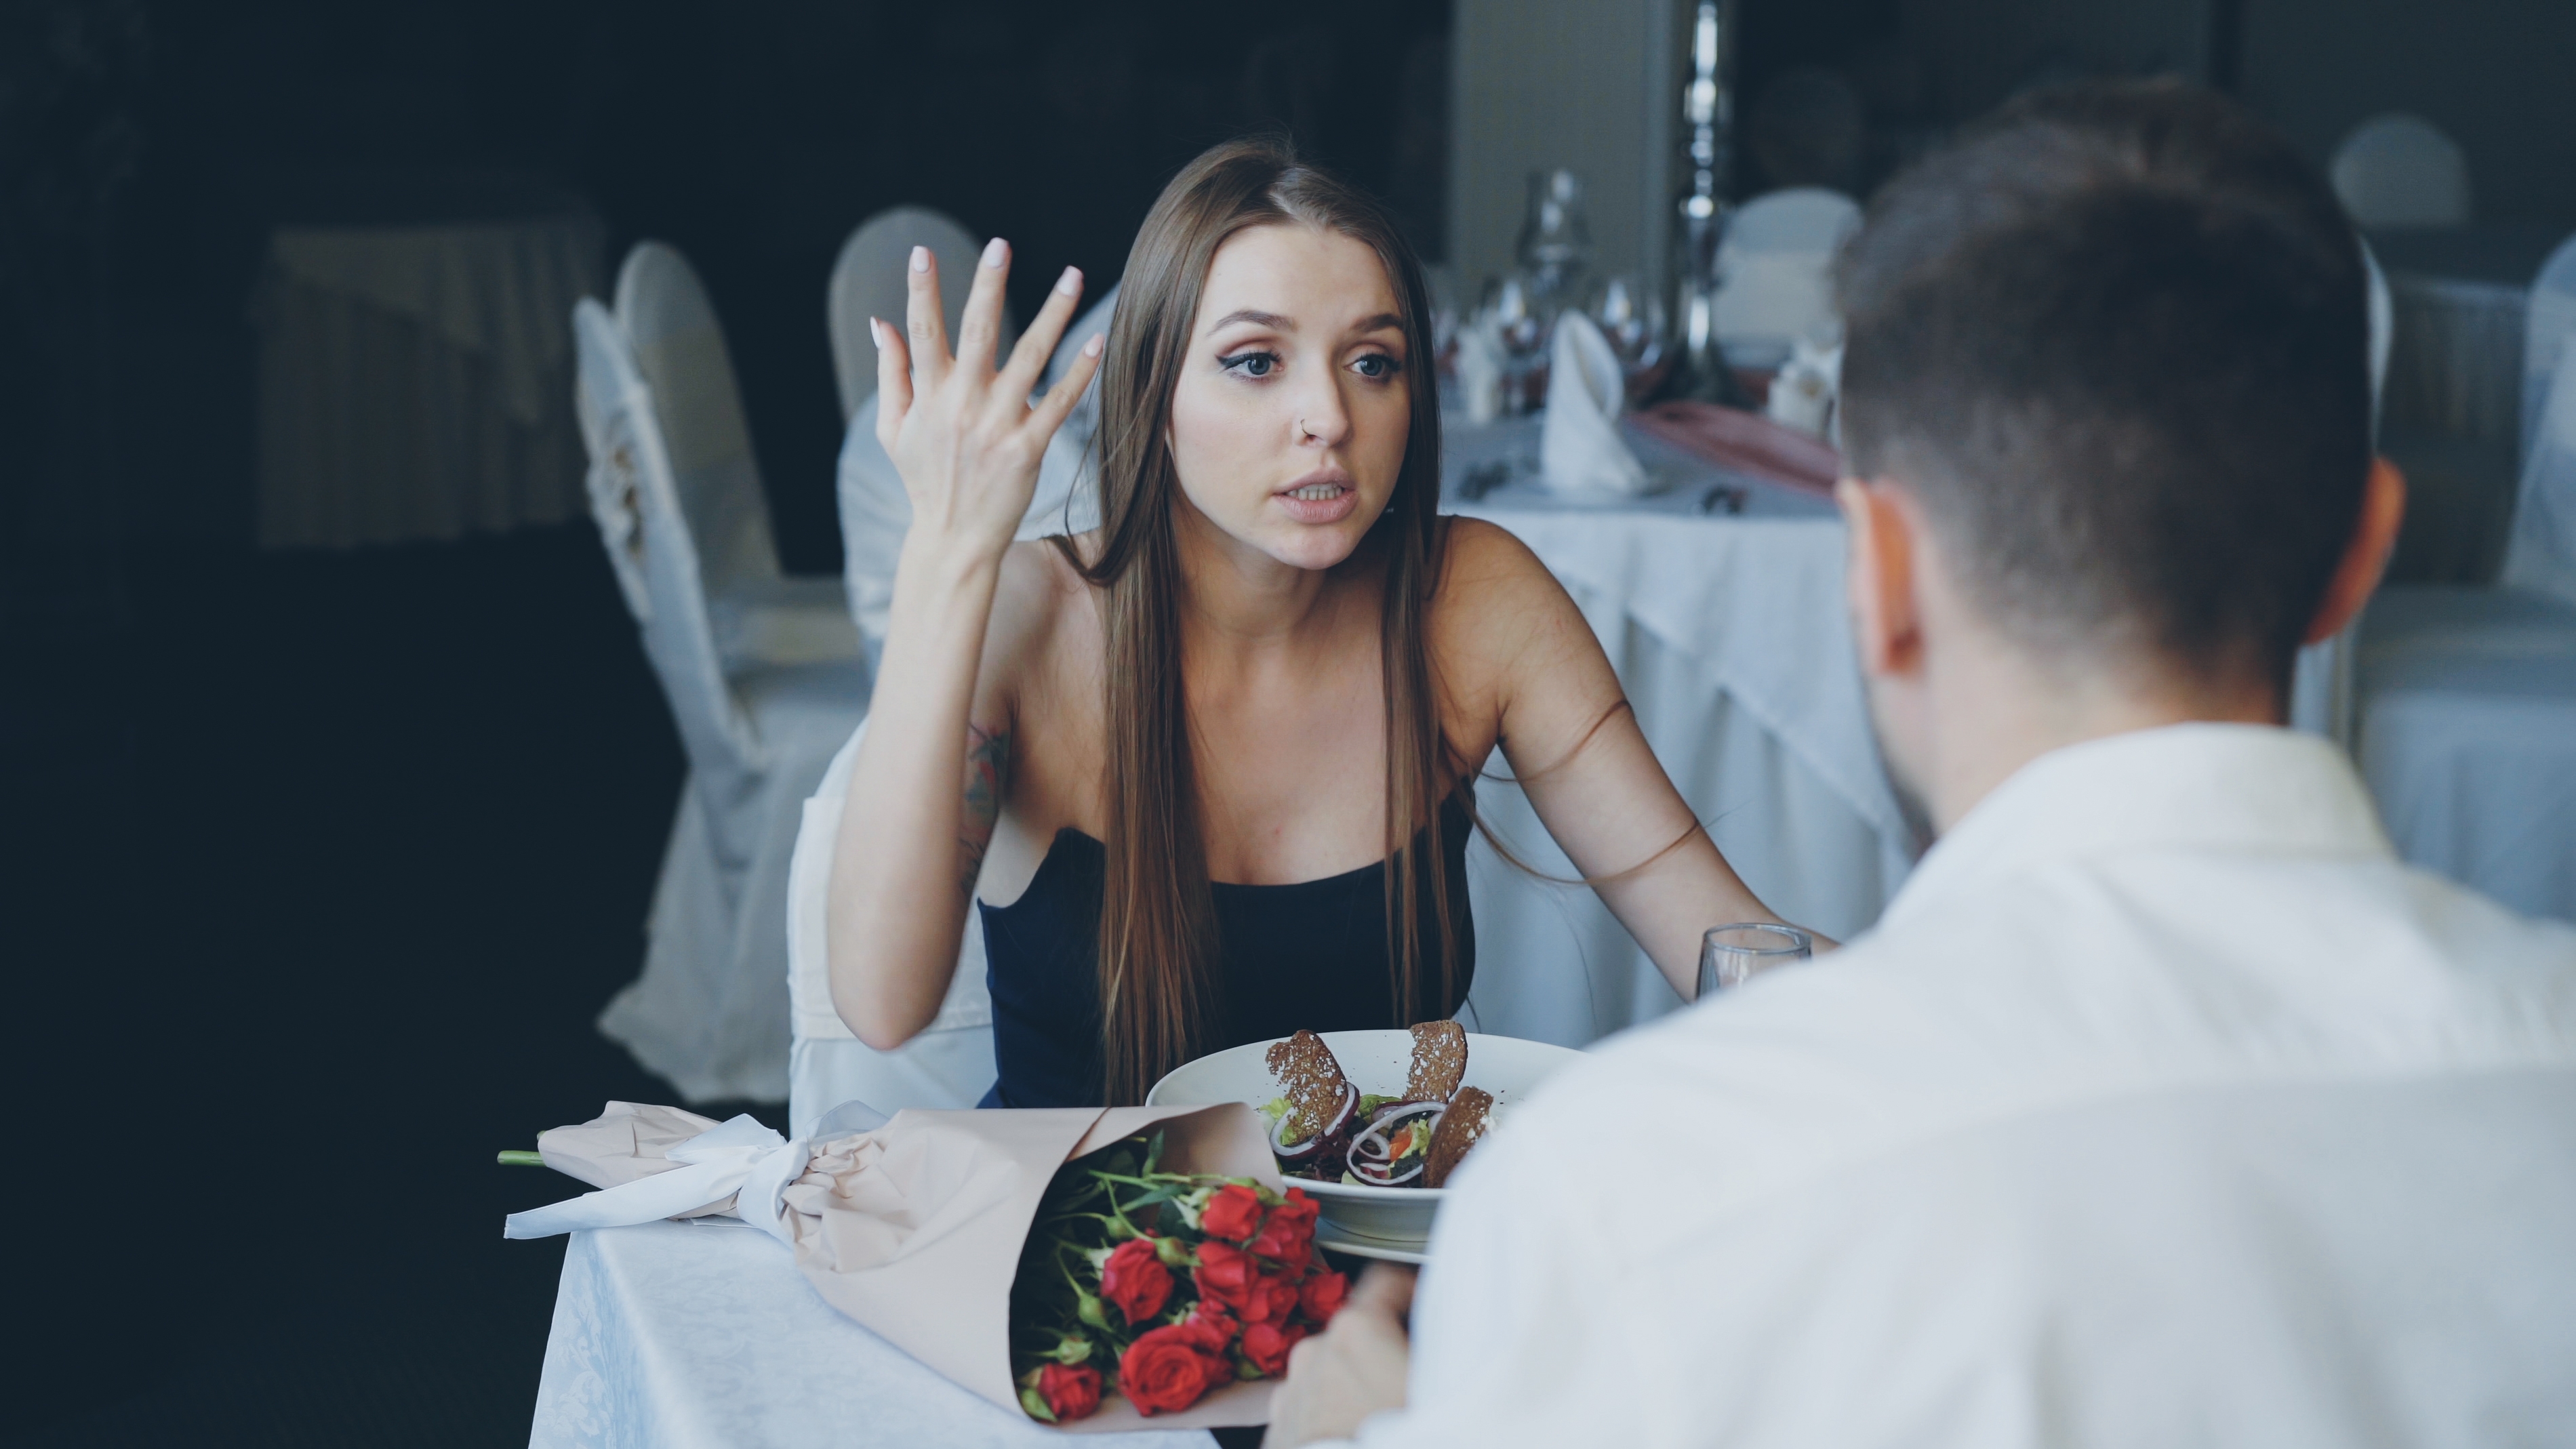 Femme se disputant avec son compagnon lors d'un rendez-vous | Source : Shutterstock